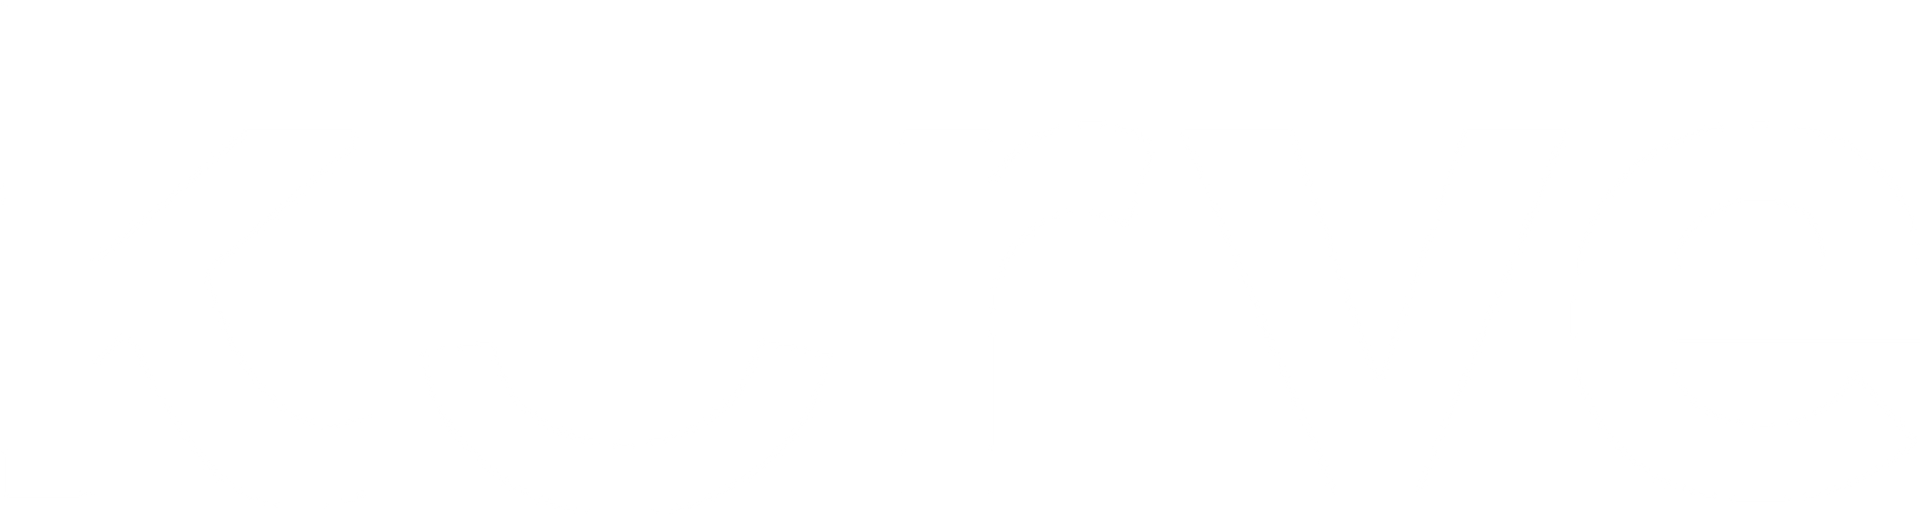 Kurve Logo